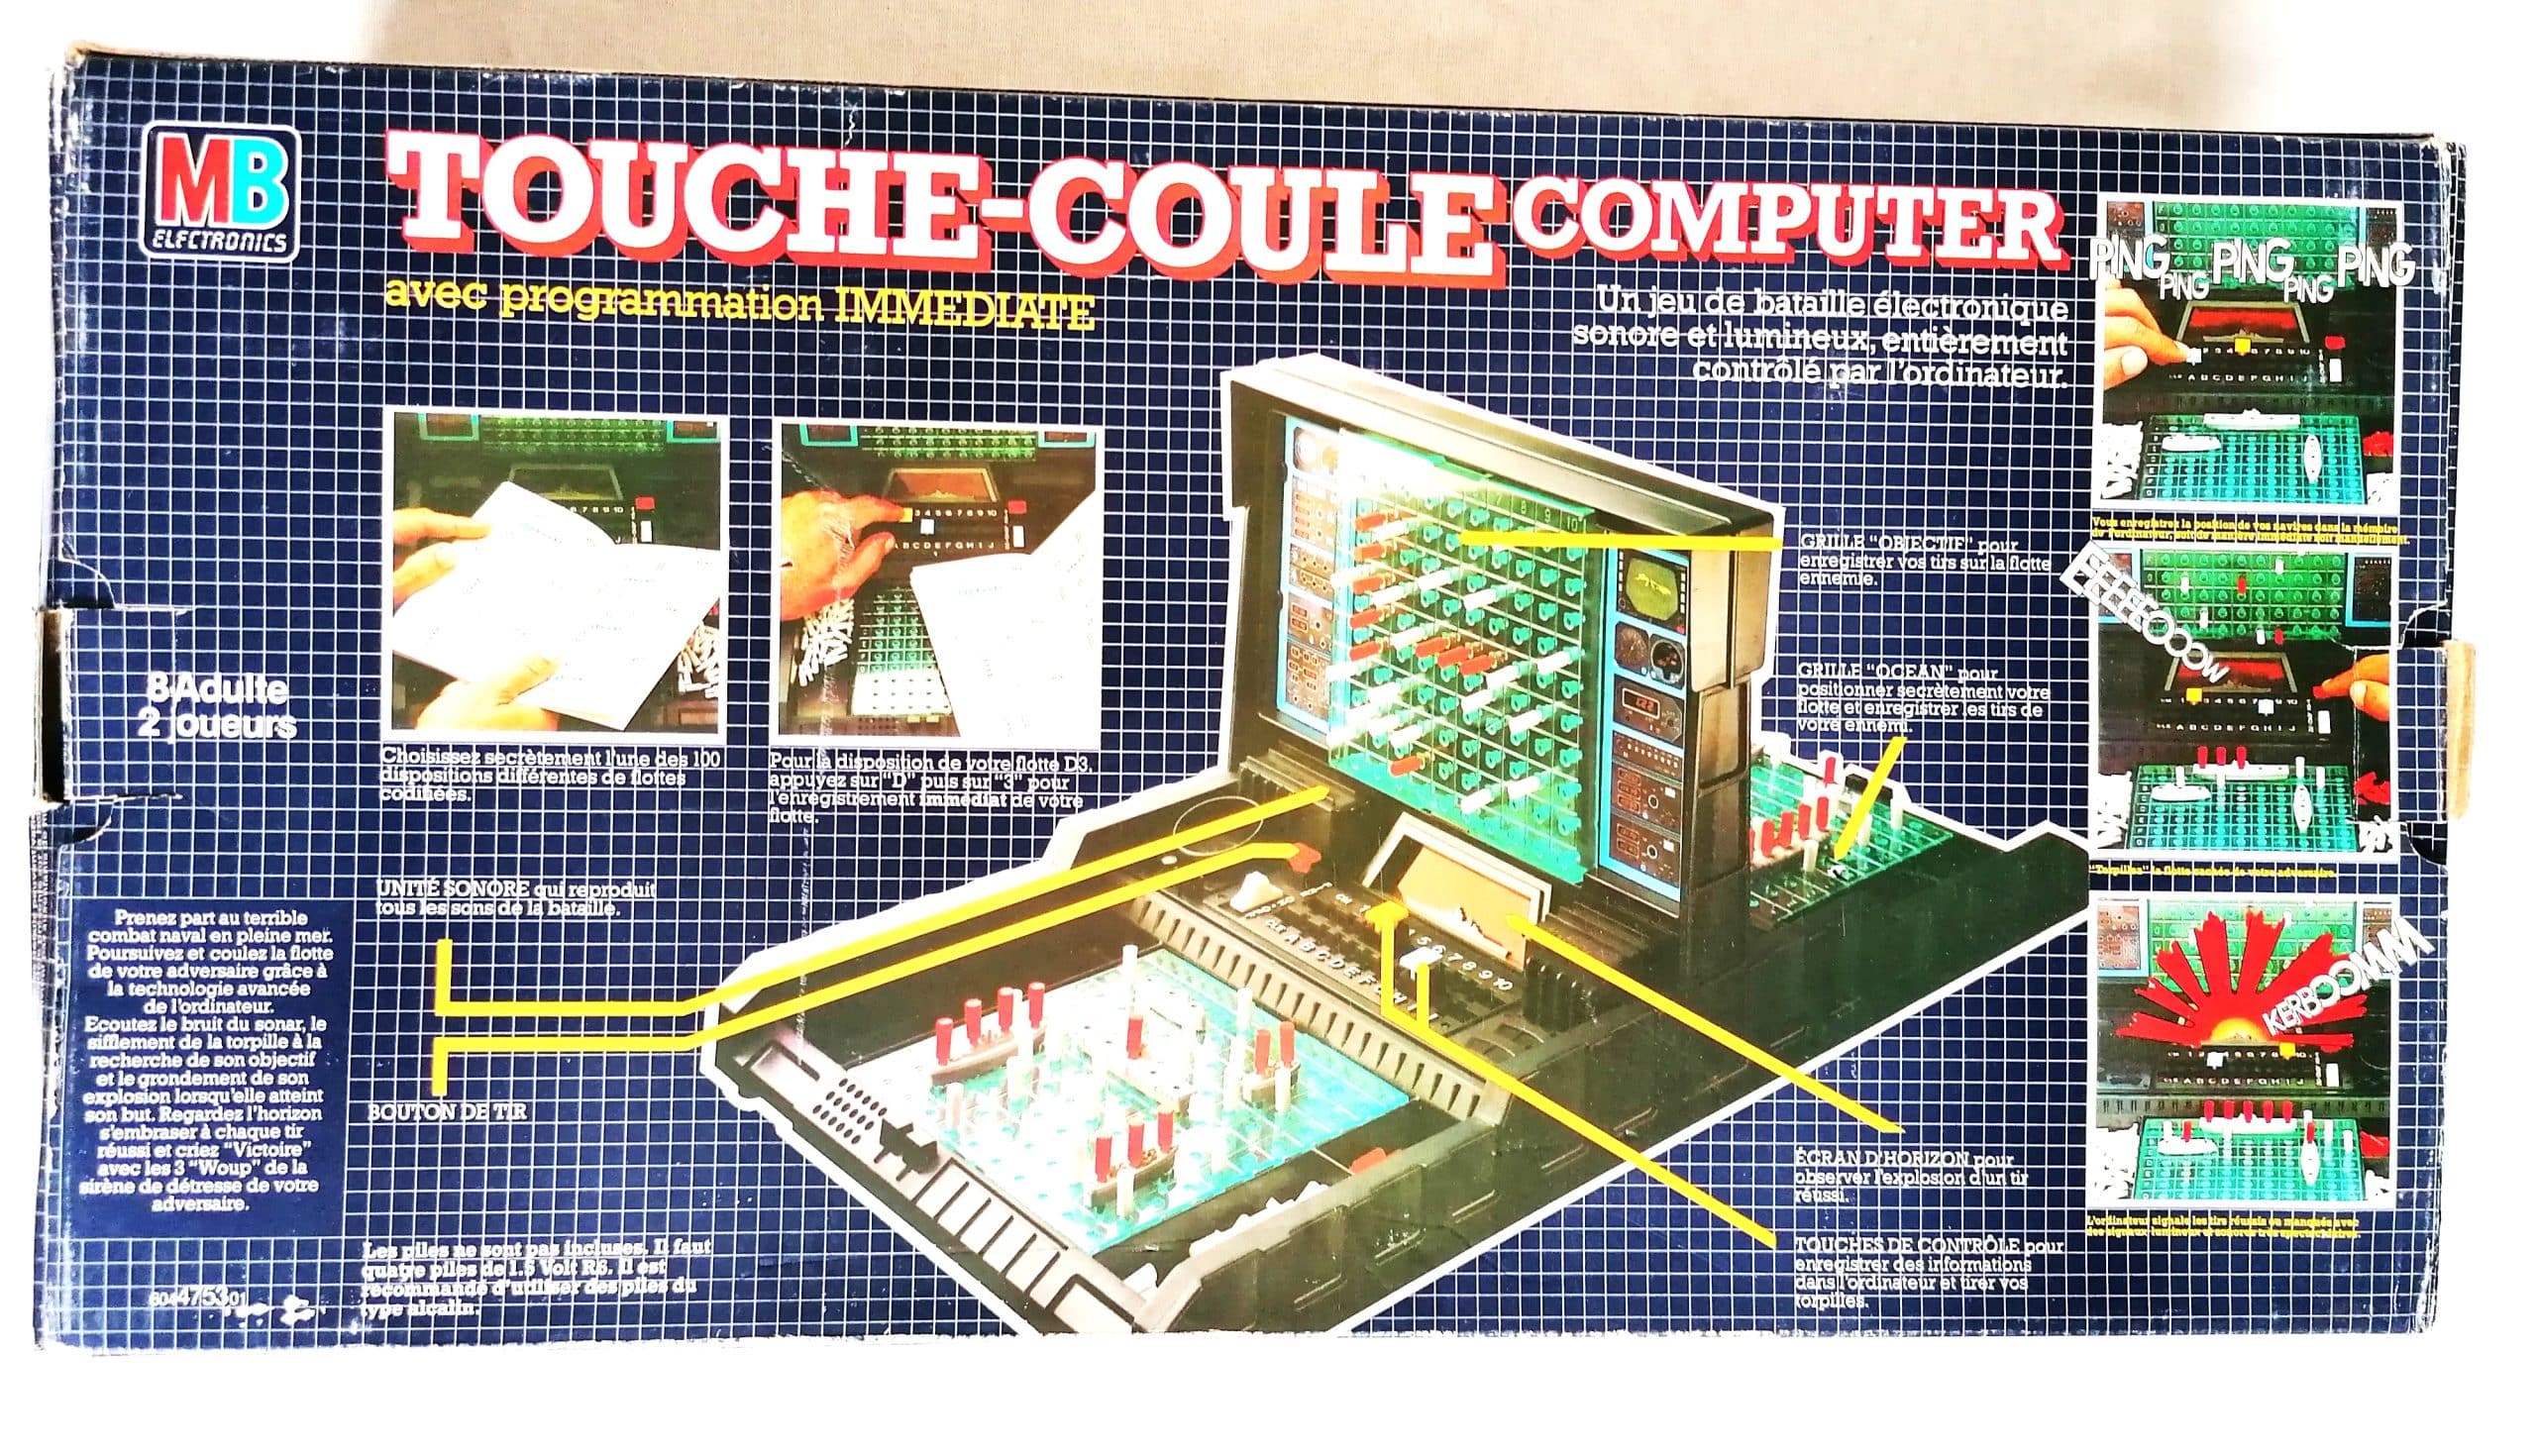 Touché-coulé computer MB Electronic